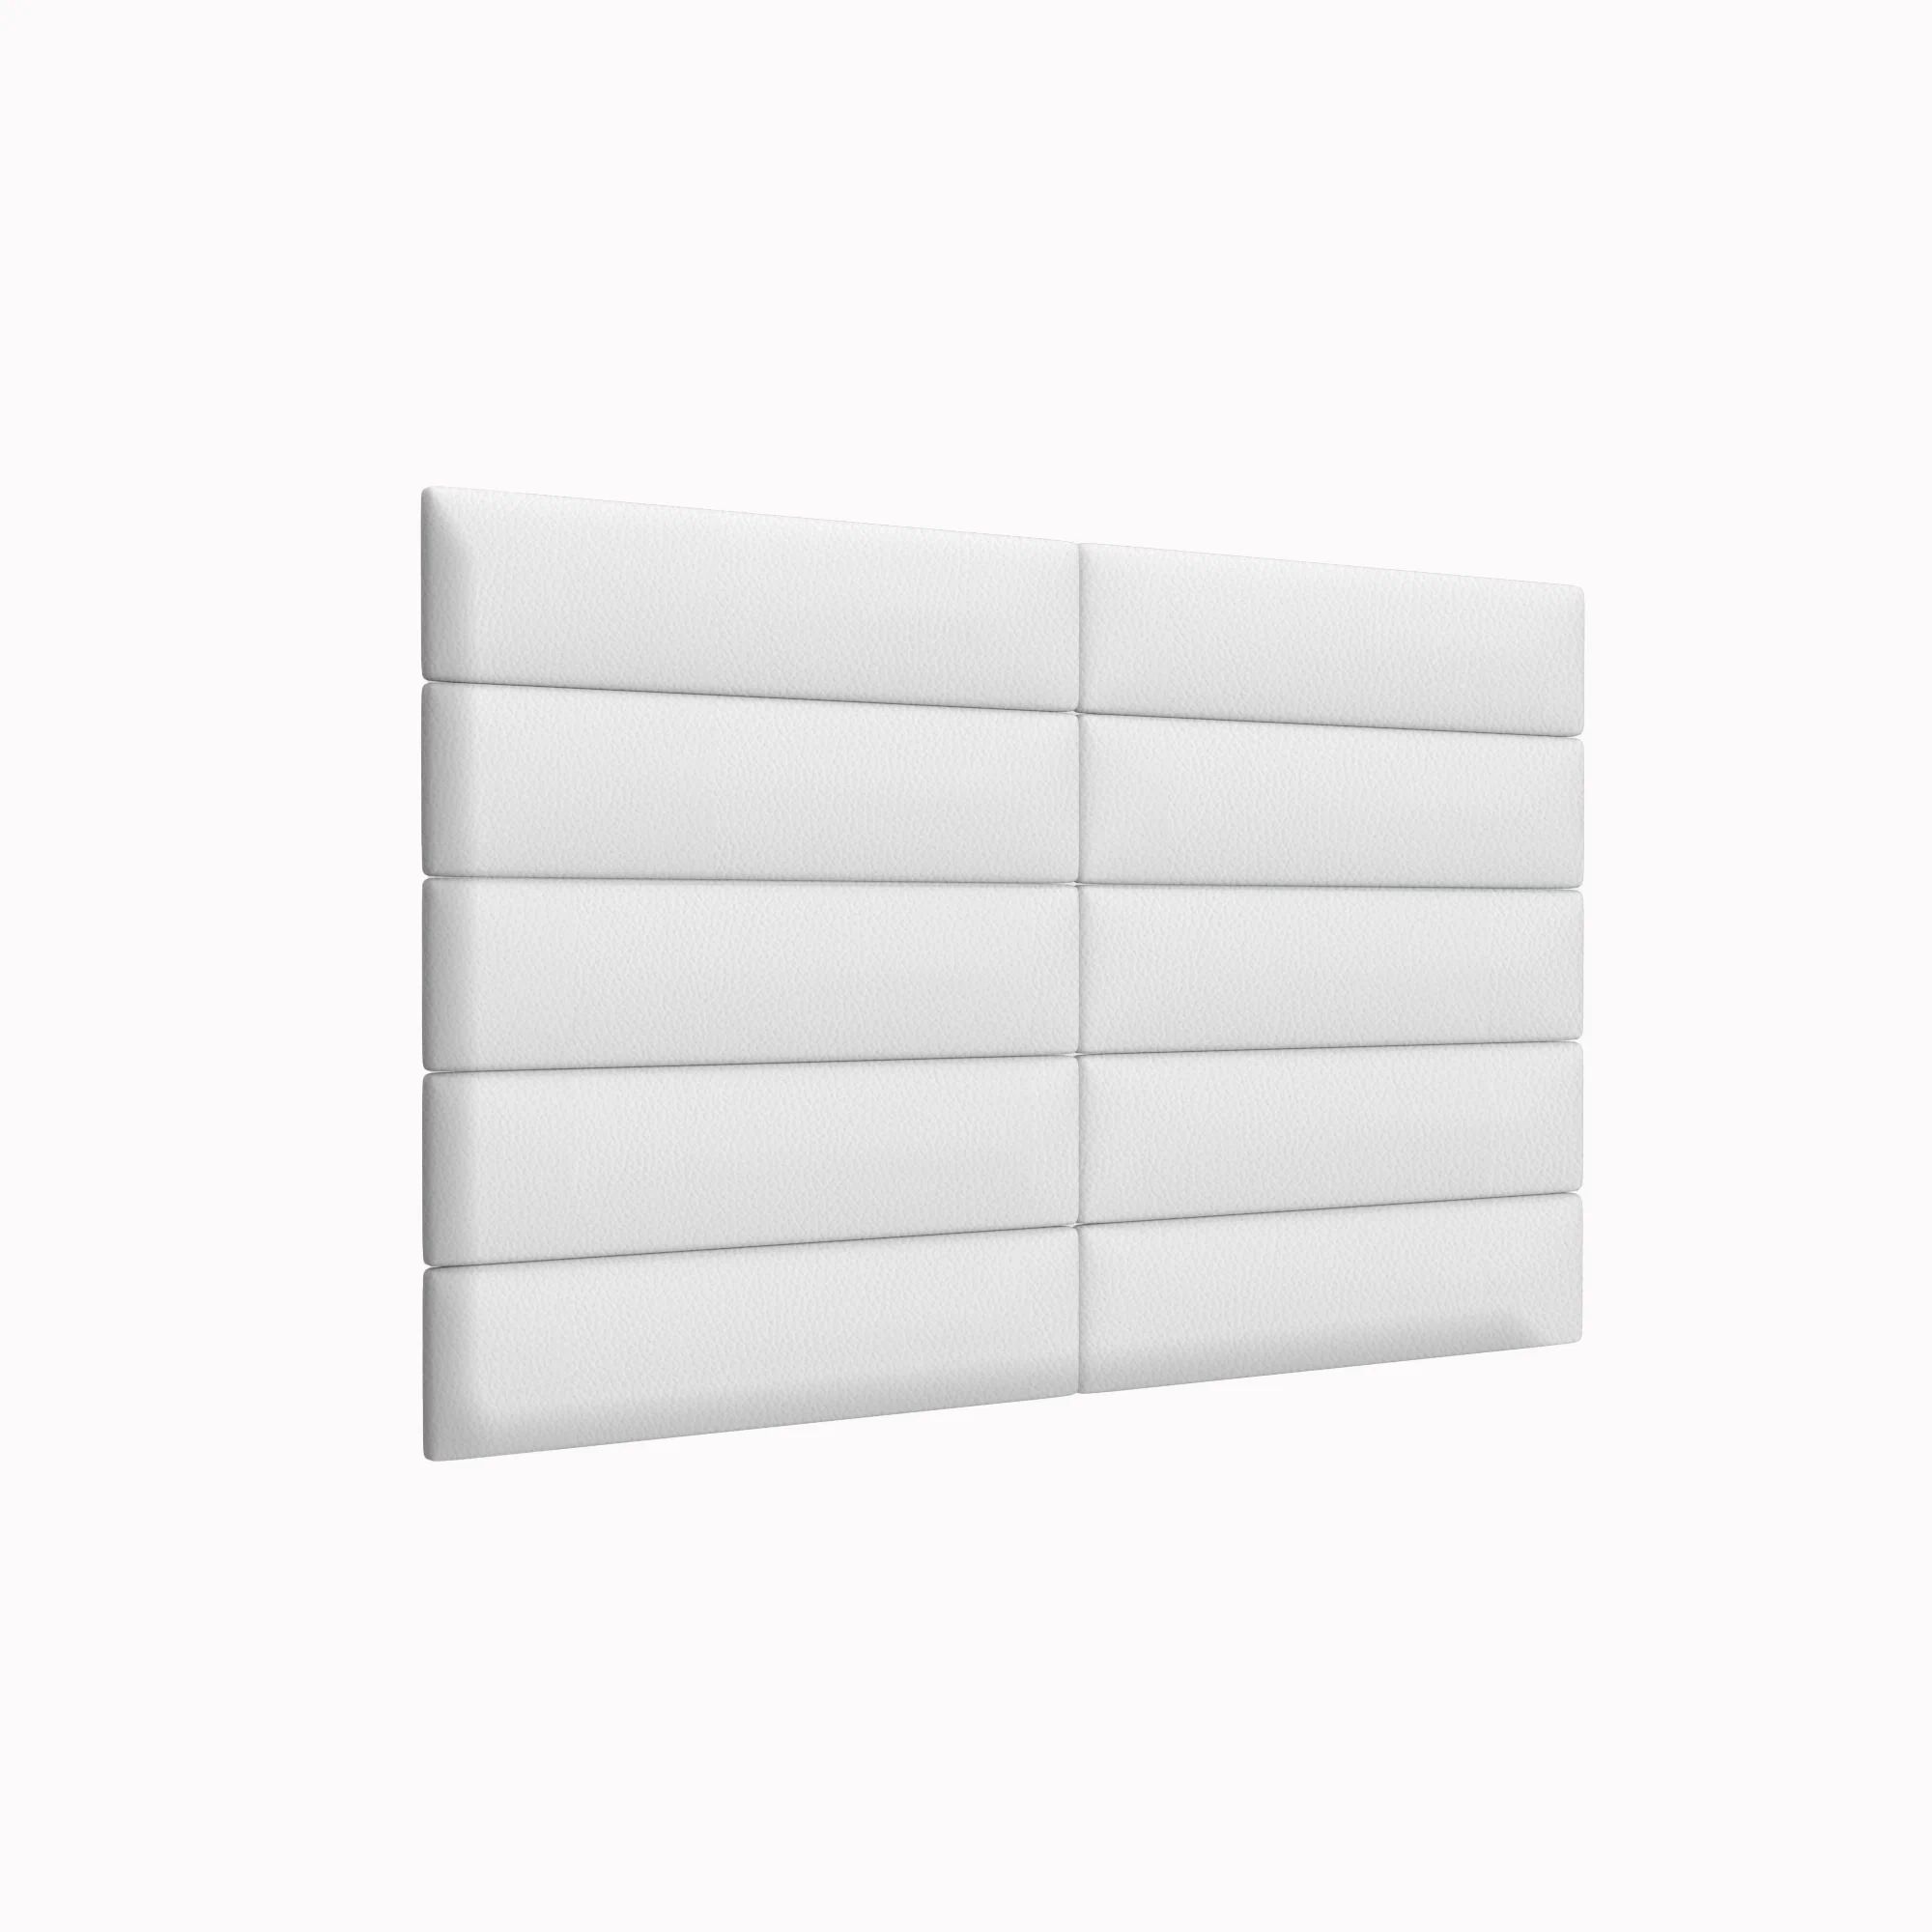 Стеновая панель Eco Leather White 15х60 см 4 шт.